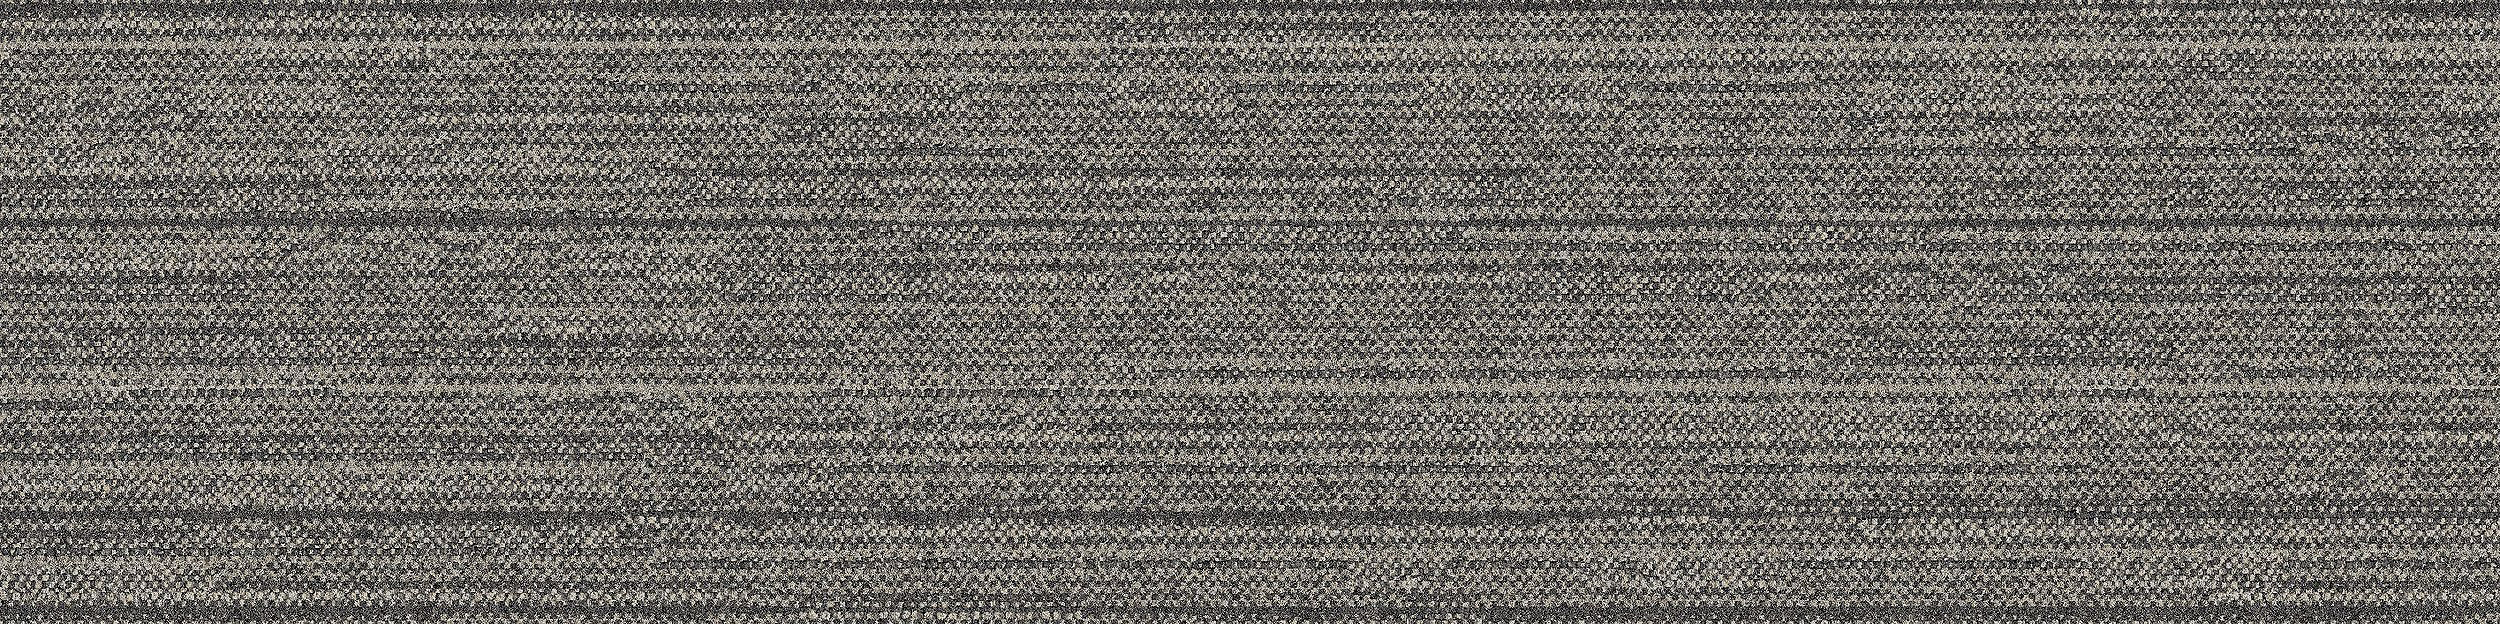 WW880 Carpet Tile In Natural Loom image number 8